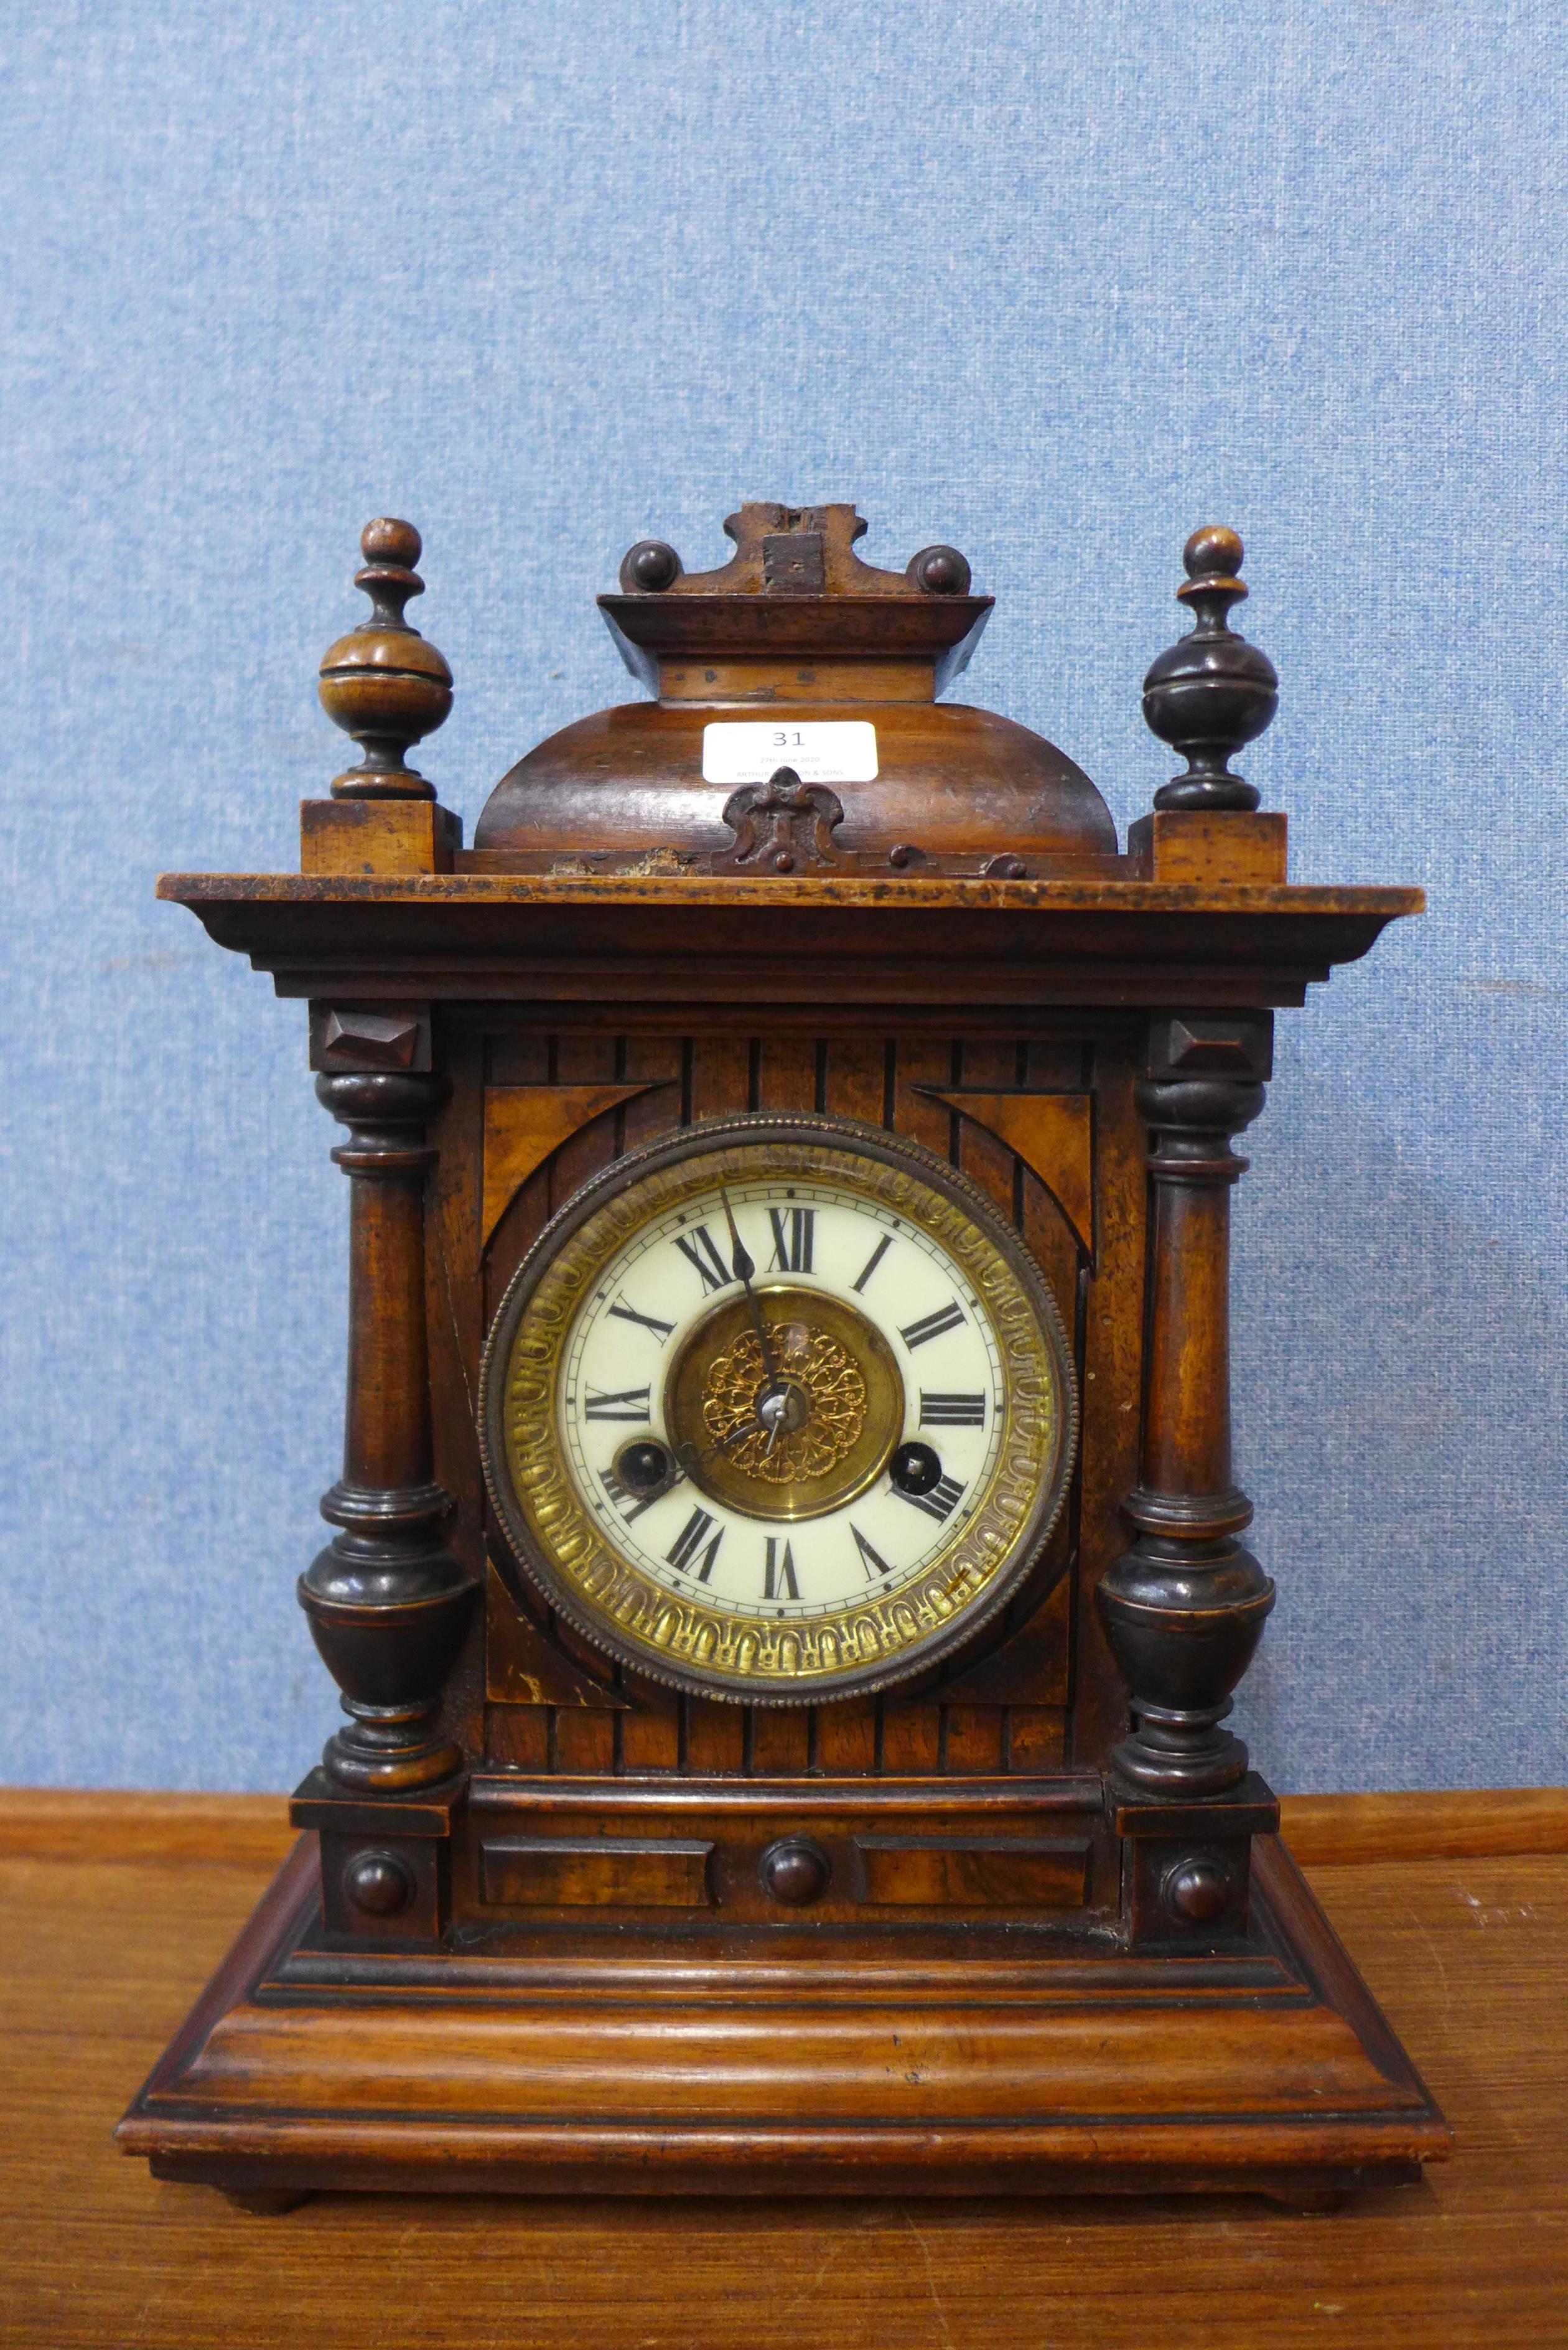 A 19th Century German walnut mantel clock